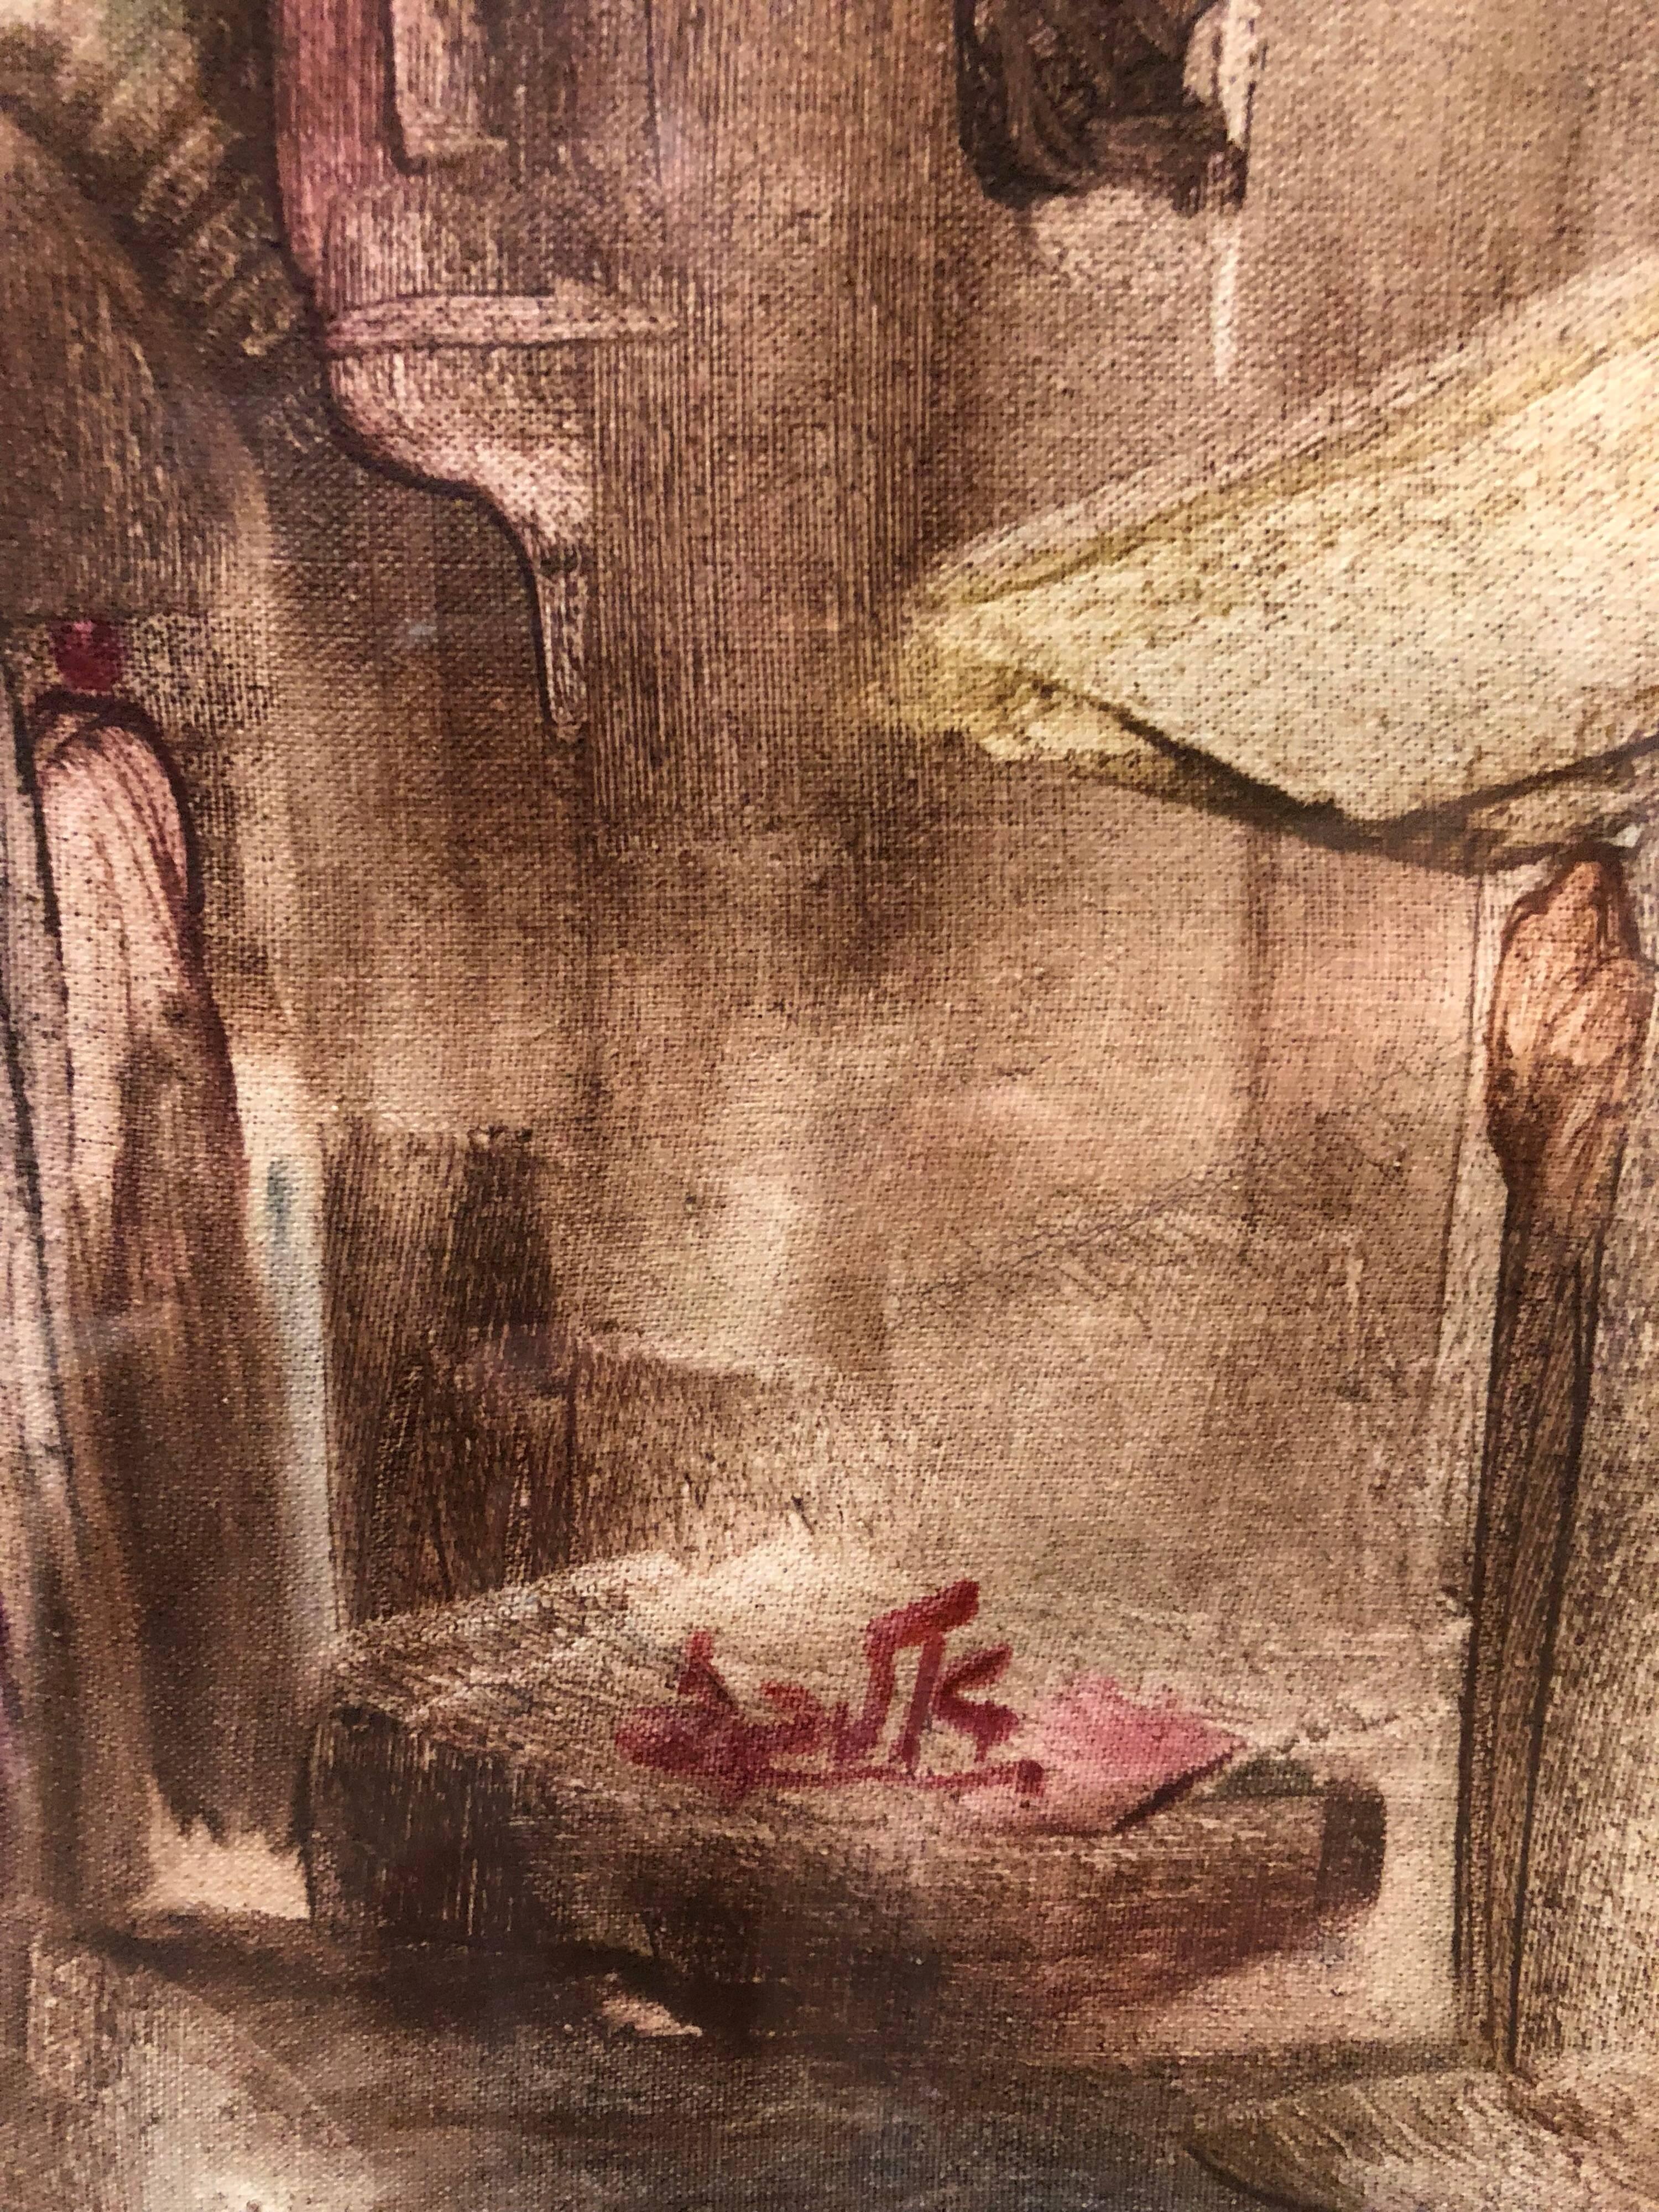 In diesem Gemälde verwendet der Künstler gestische Pinselstriche, die eine Verzerrung und Übertreibung für eine emotionale Wirkung bewirken. Andre Elbaz verwendet als Motiv Figuren, die in der Altstadt von Jerusalem spazieren gehen.

André Elbaz